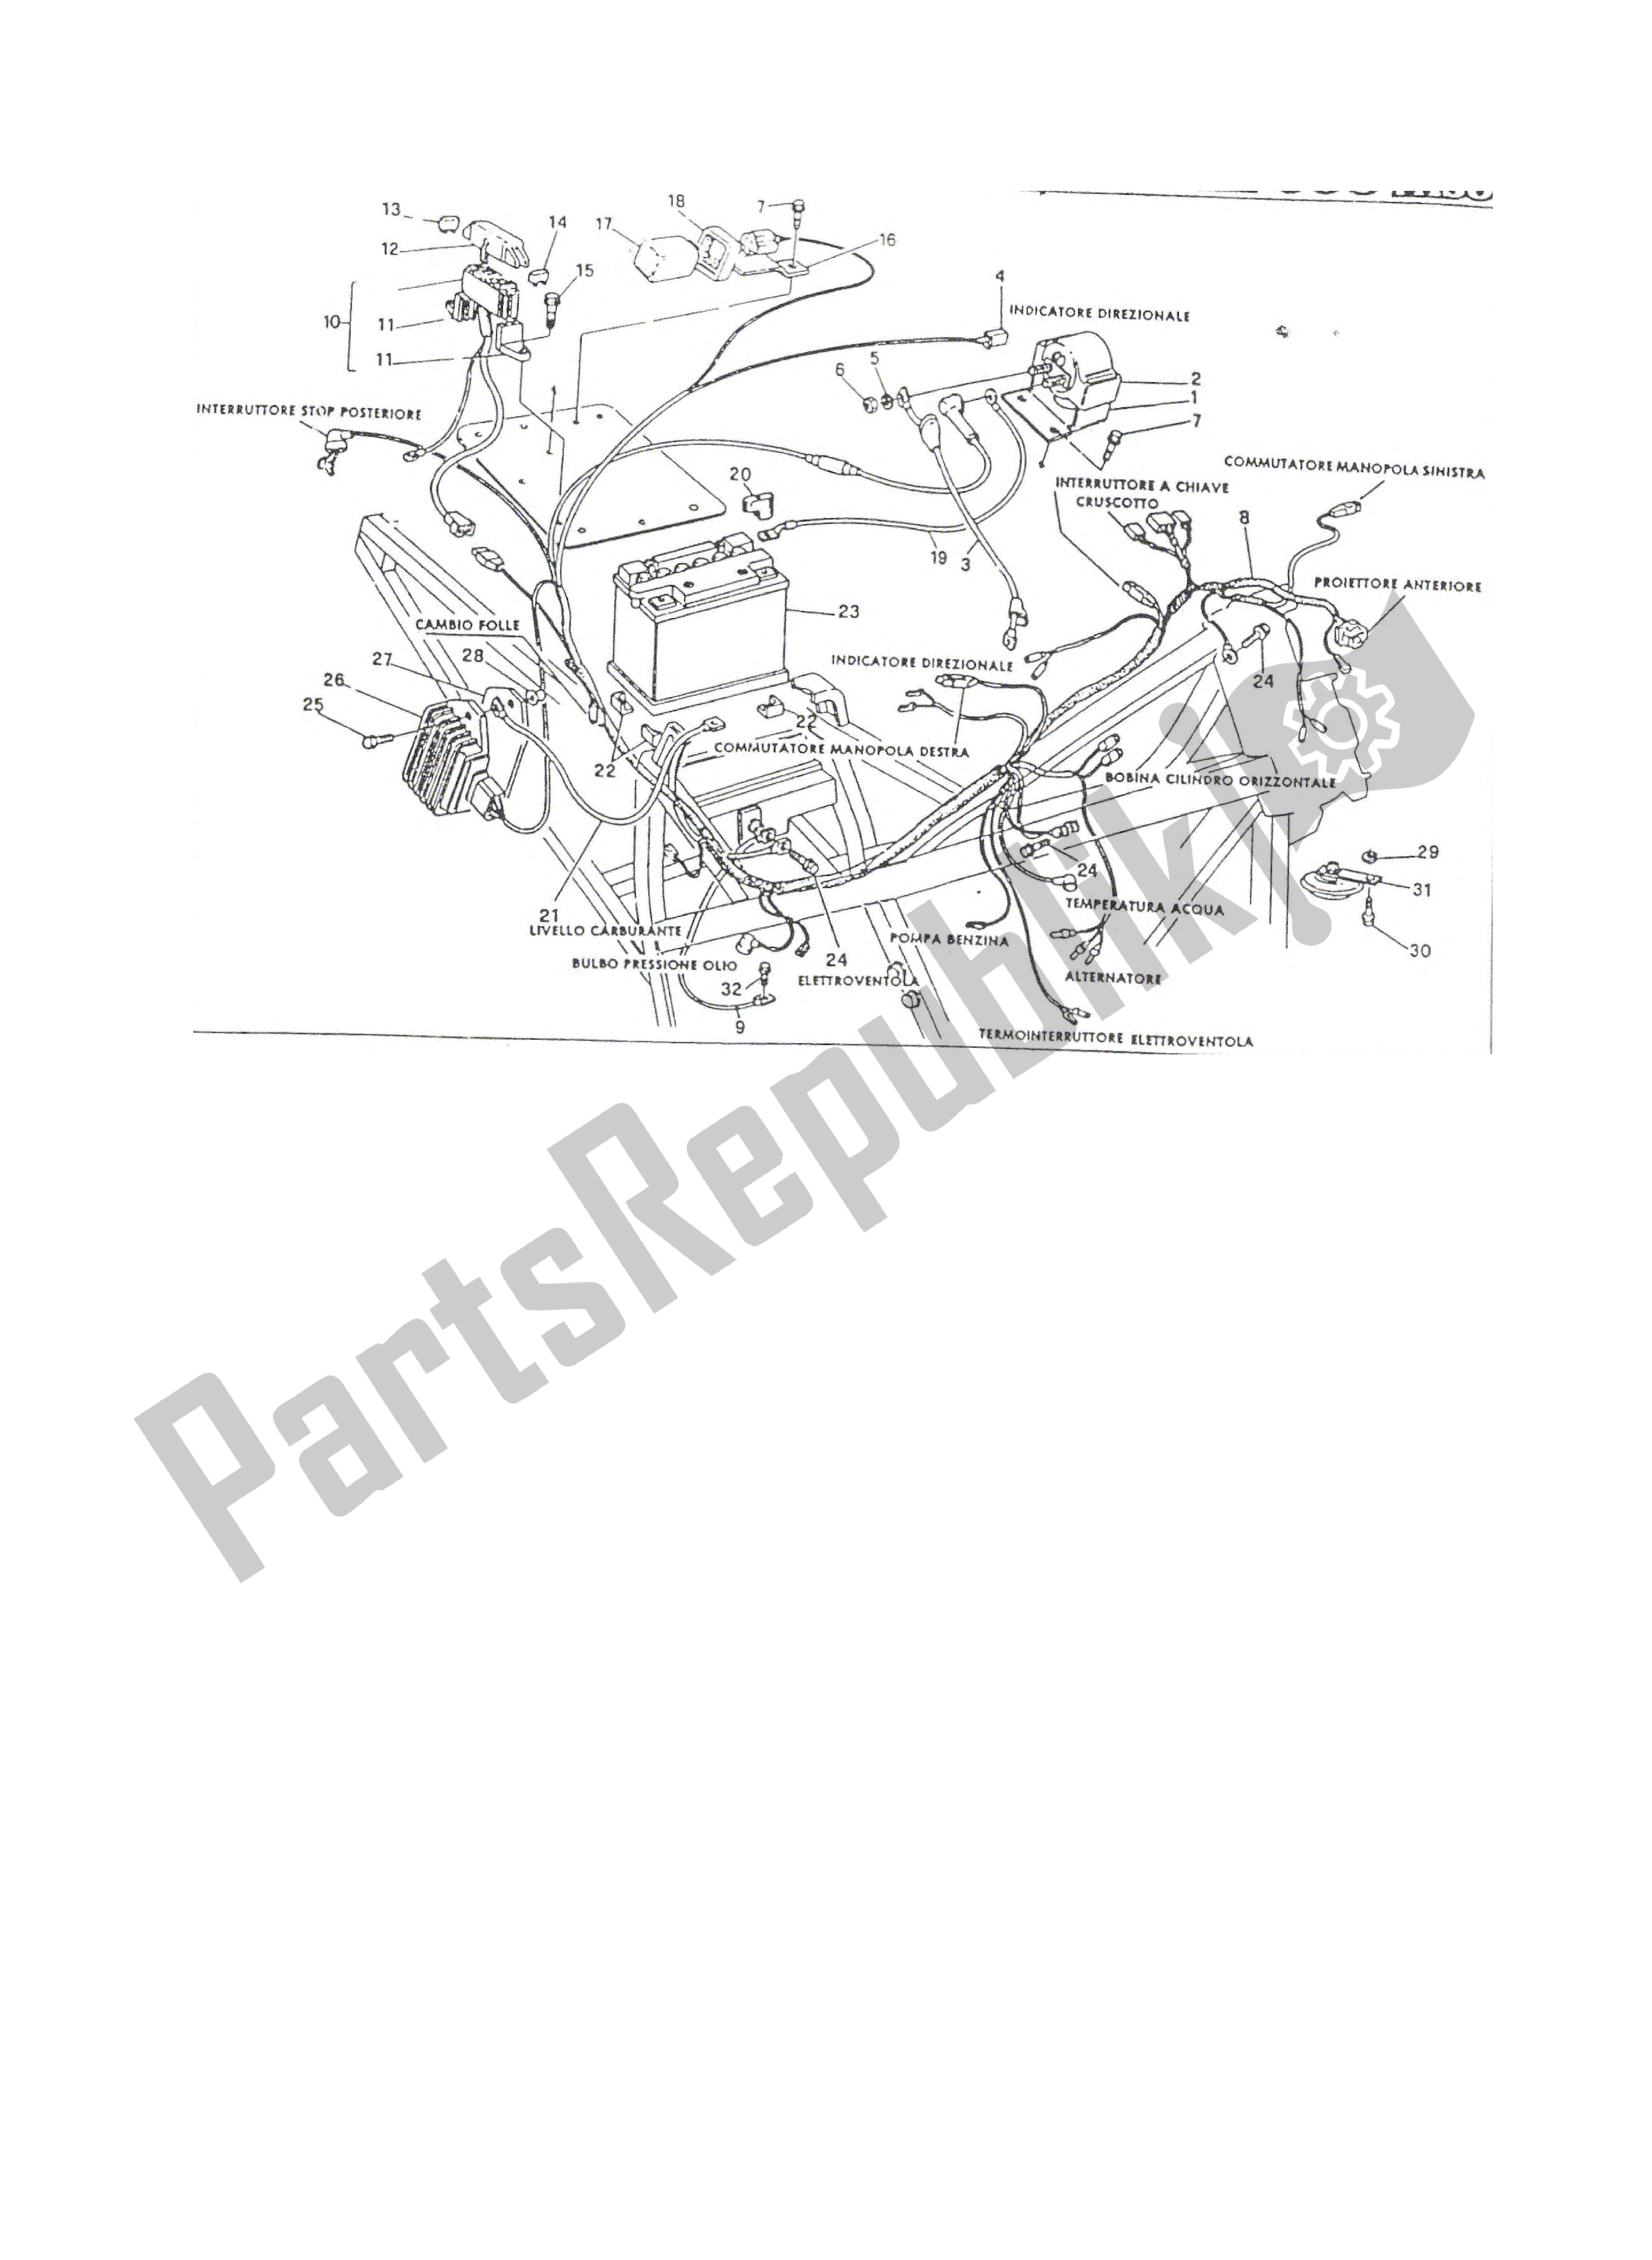 Tutte le parti per il Sistema Elettrico del Ducati Paso 906 1988 - 1989